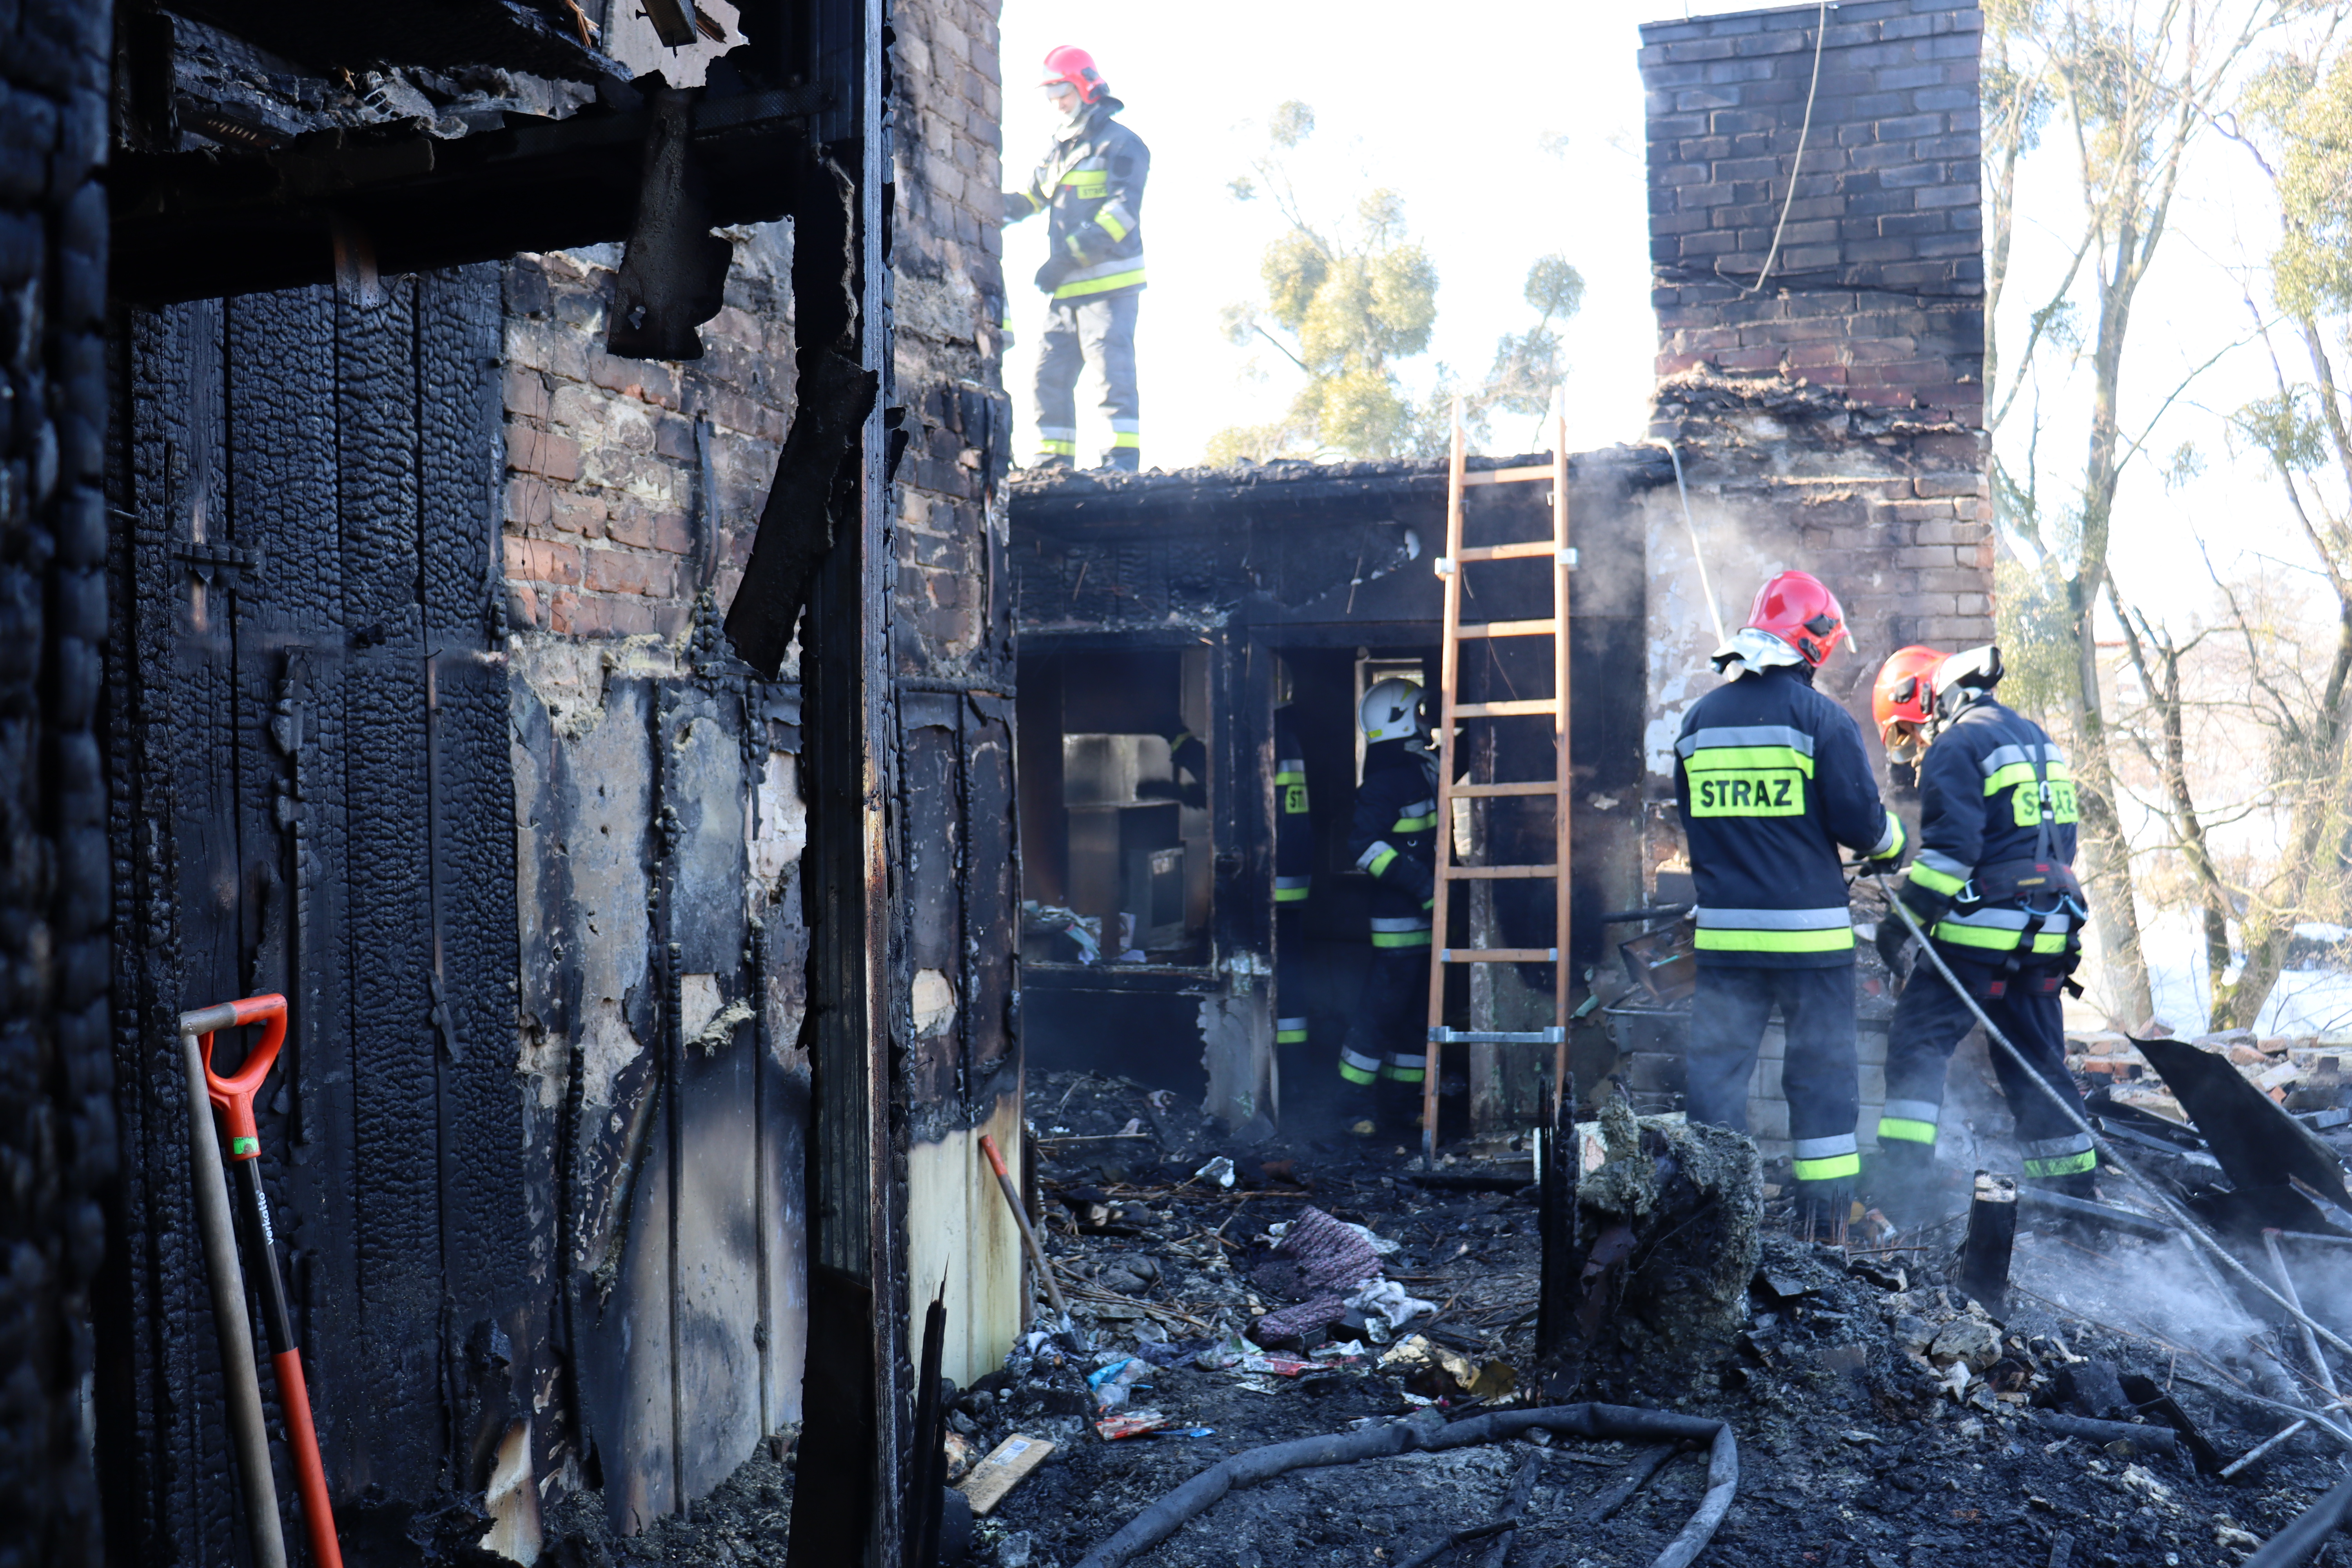 22 zastępy straży pożarnej w akcji gaszenia pożaru budynku mieszkalnego. Straty są ogromne (zdjęcia)